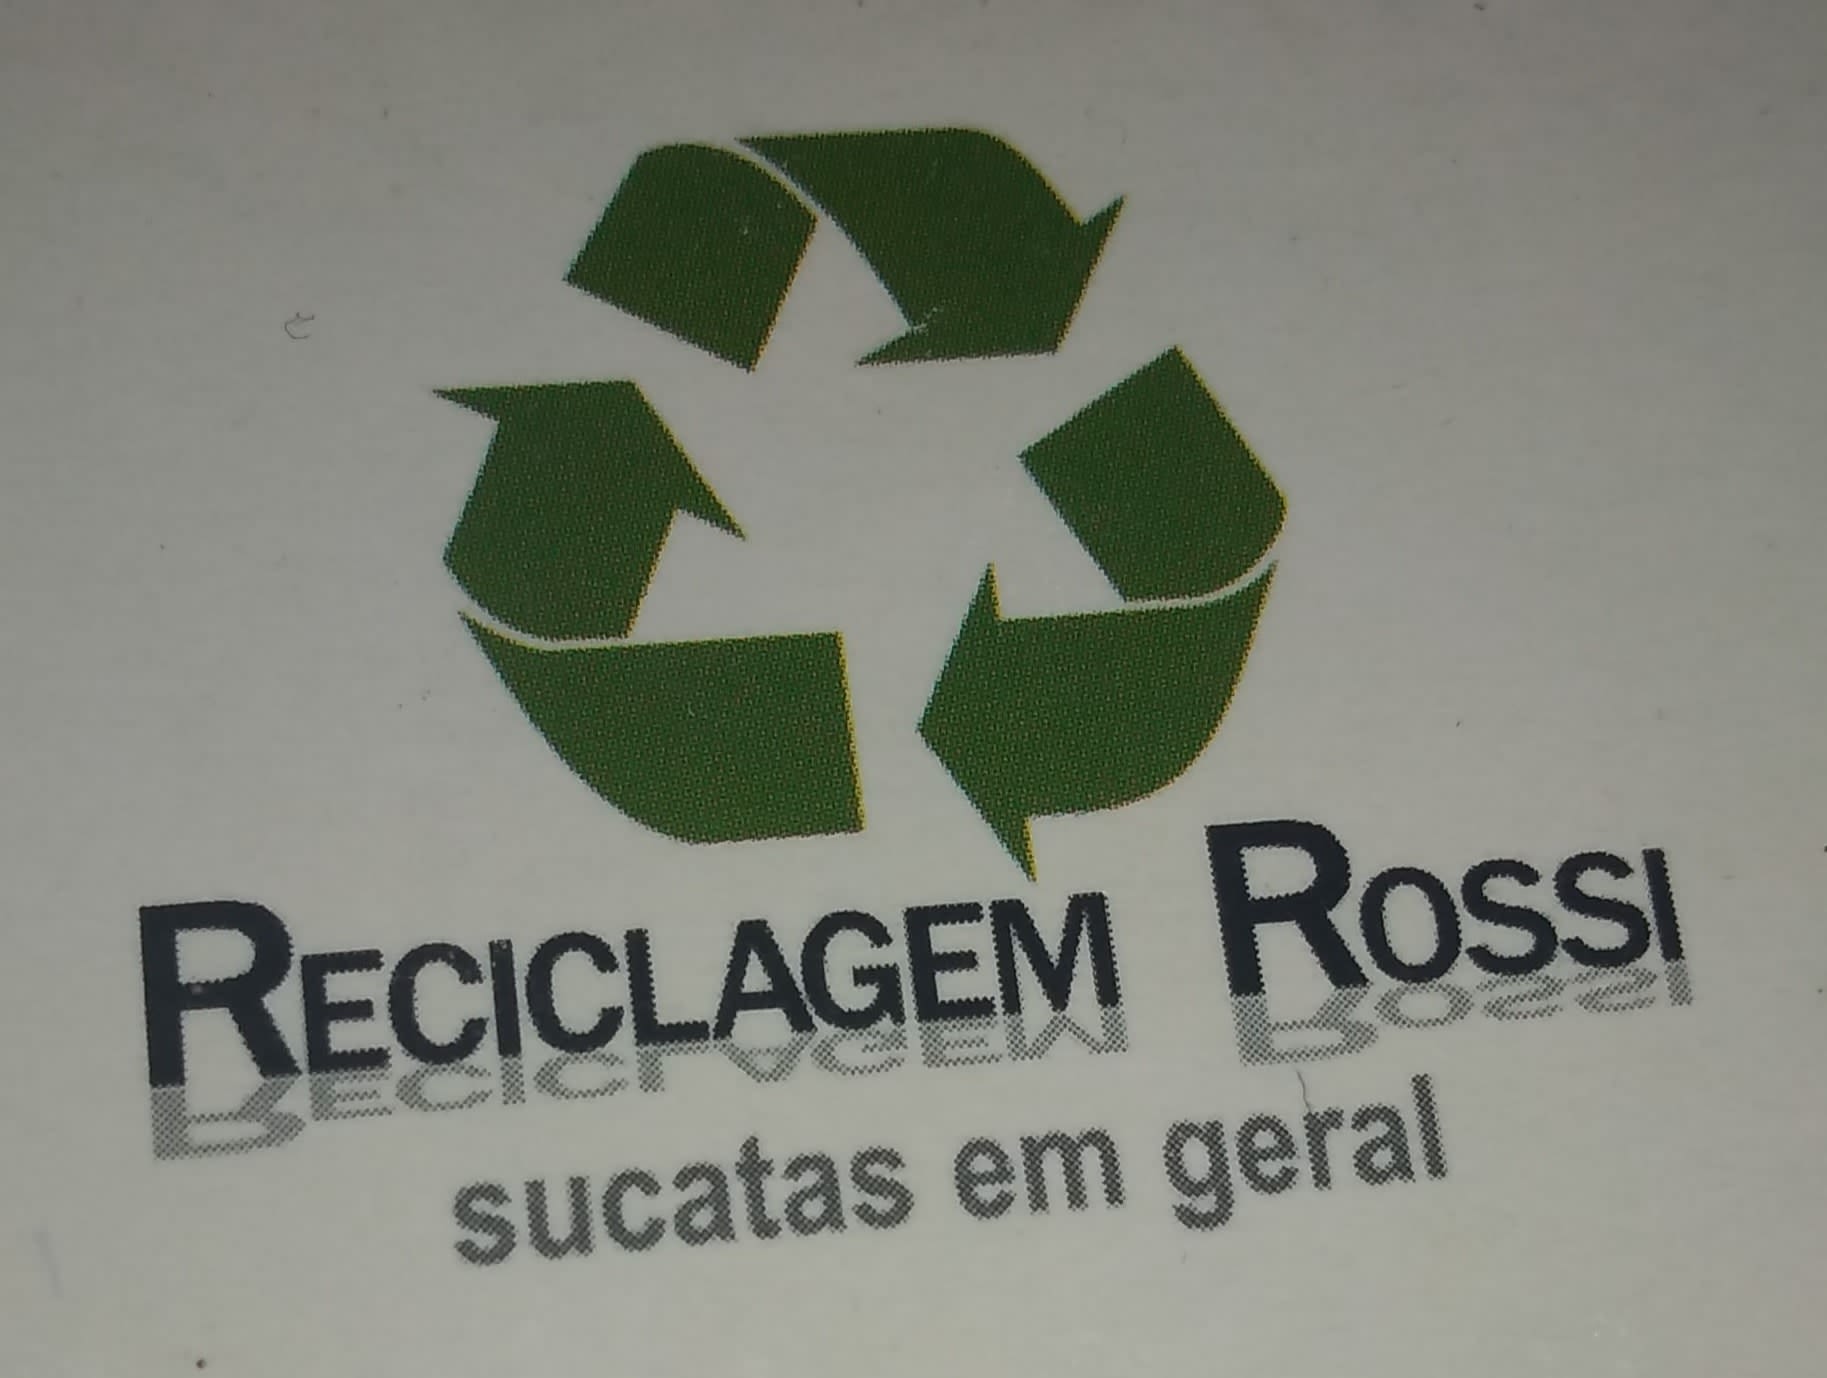 Reciclagem Rossi